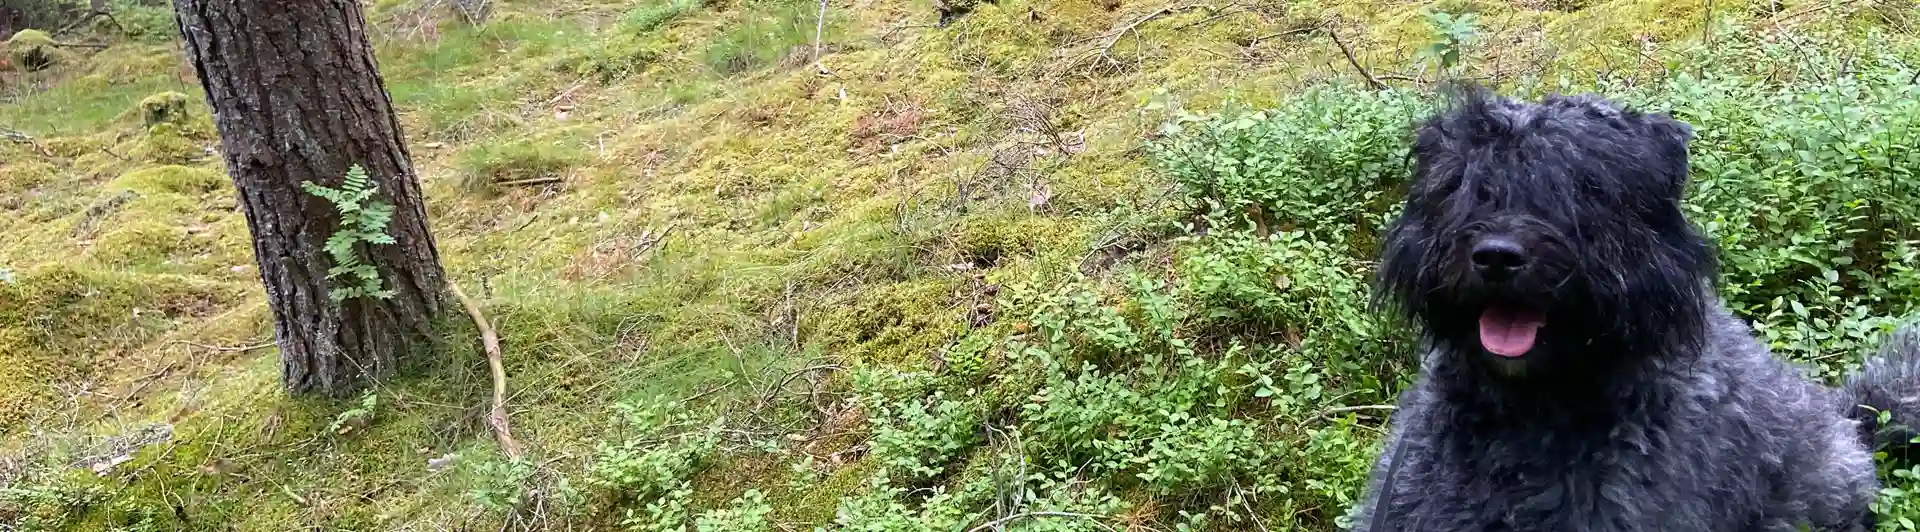 BOUVIER DES FLANDRES i färgen brindle som sitter ner i blåbärsris i skogsmiljö